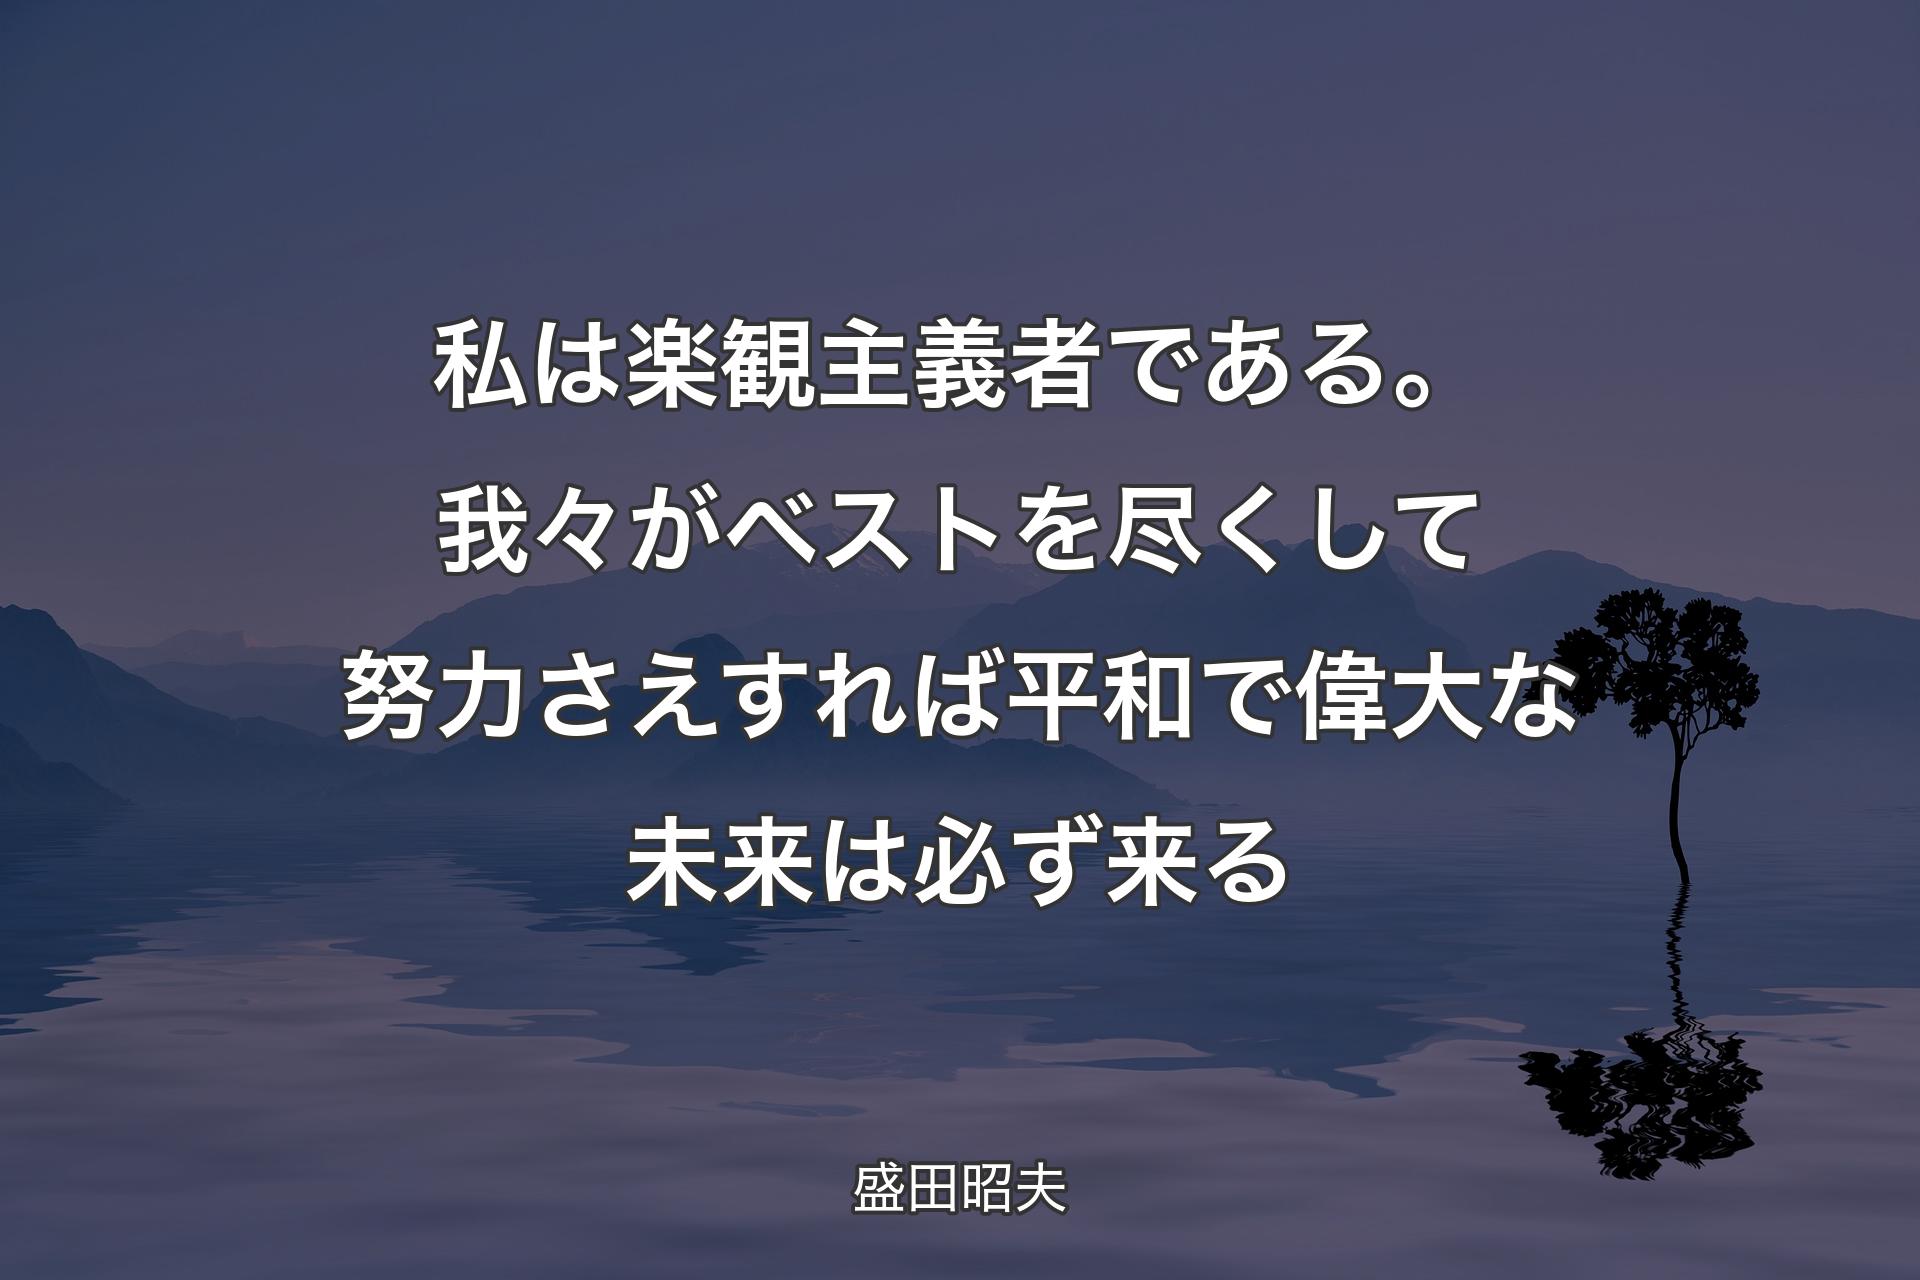 【背景4】私は楽観主義者である。我々がベストを尽くして努力さえすれば平和で偉大な未来は必ず来る - 盛田昭夫